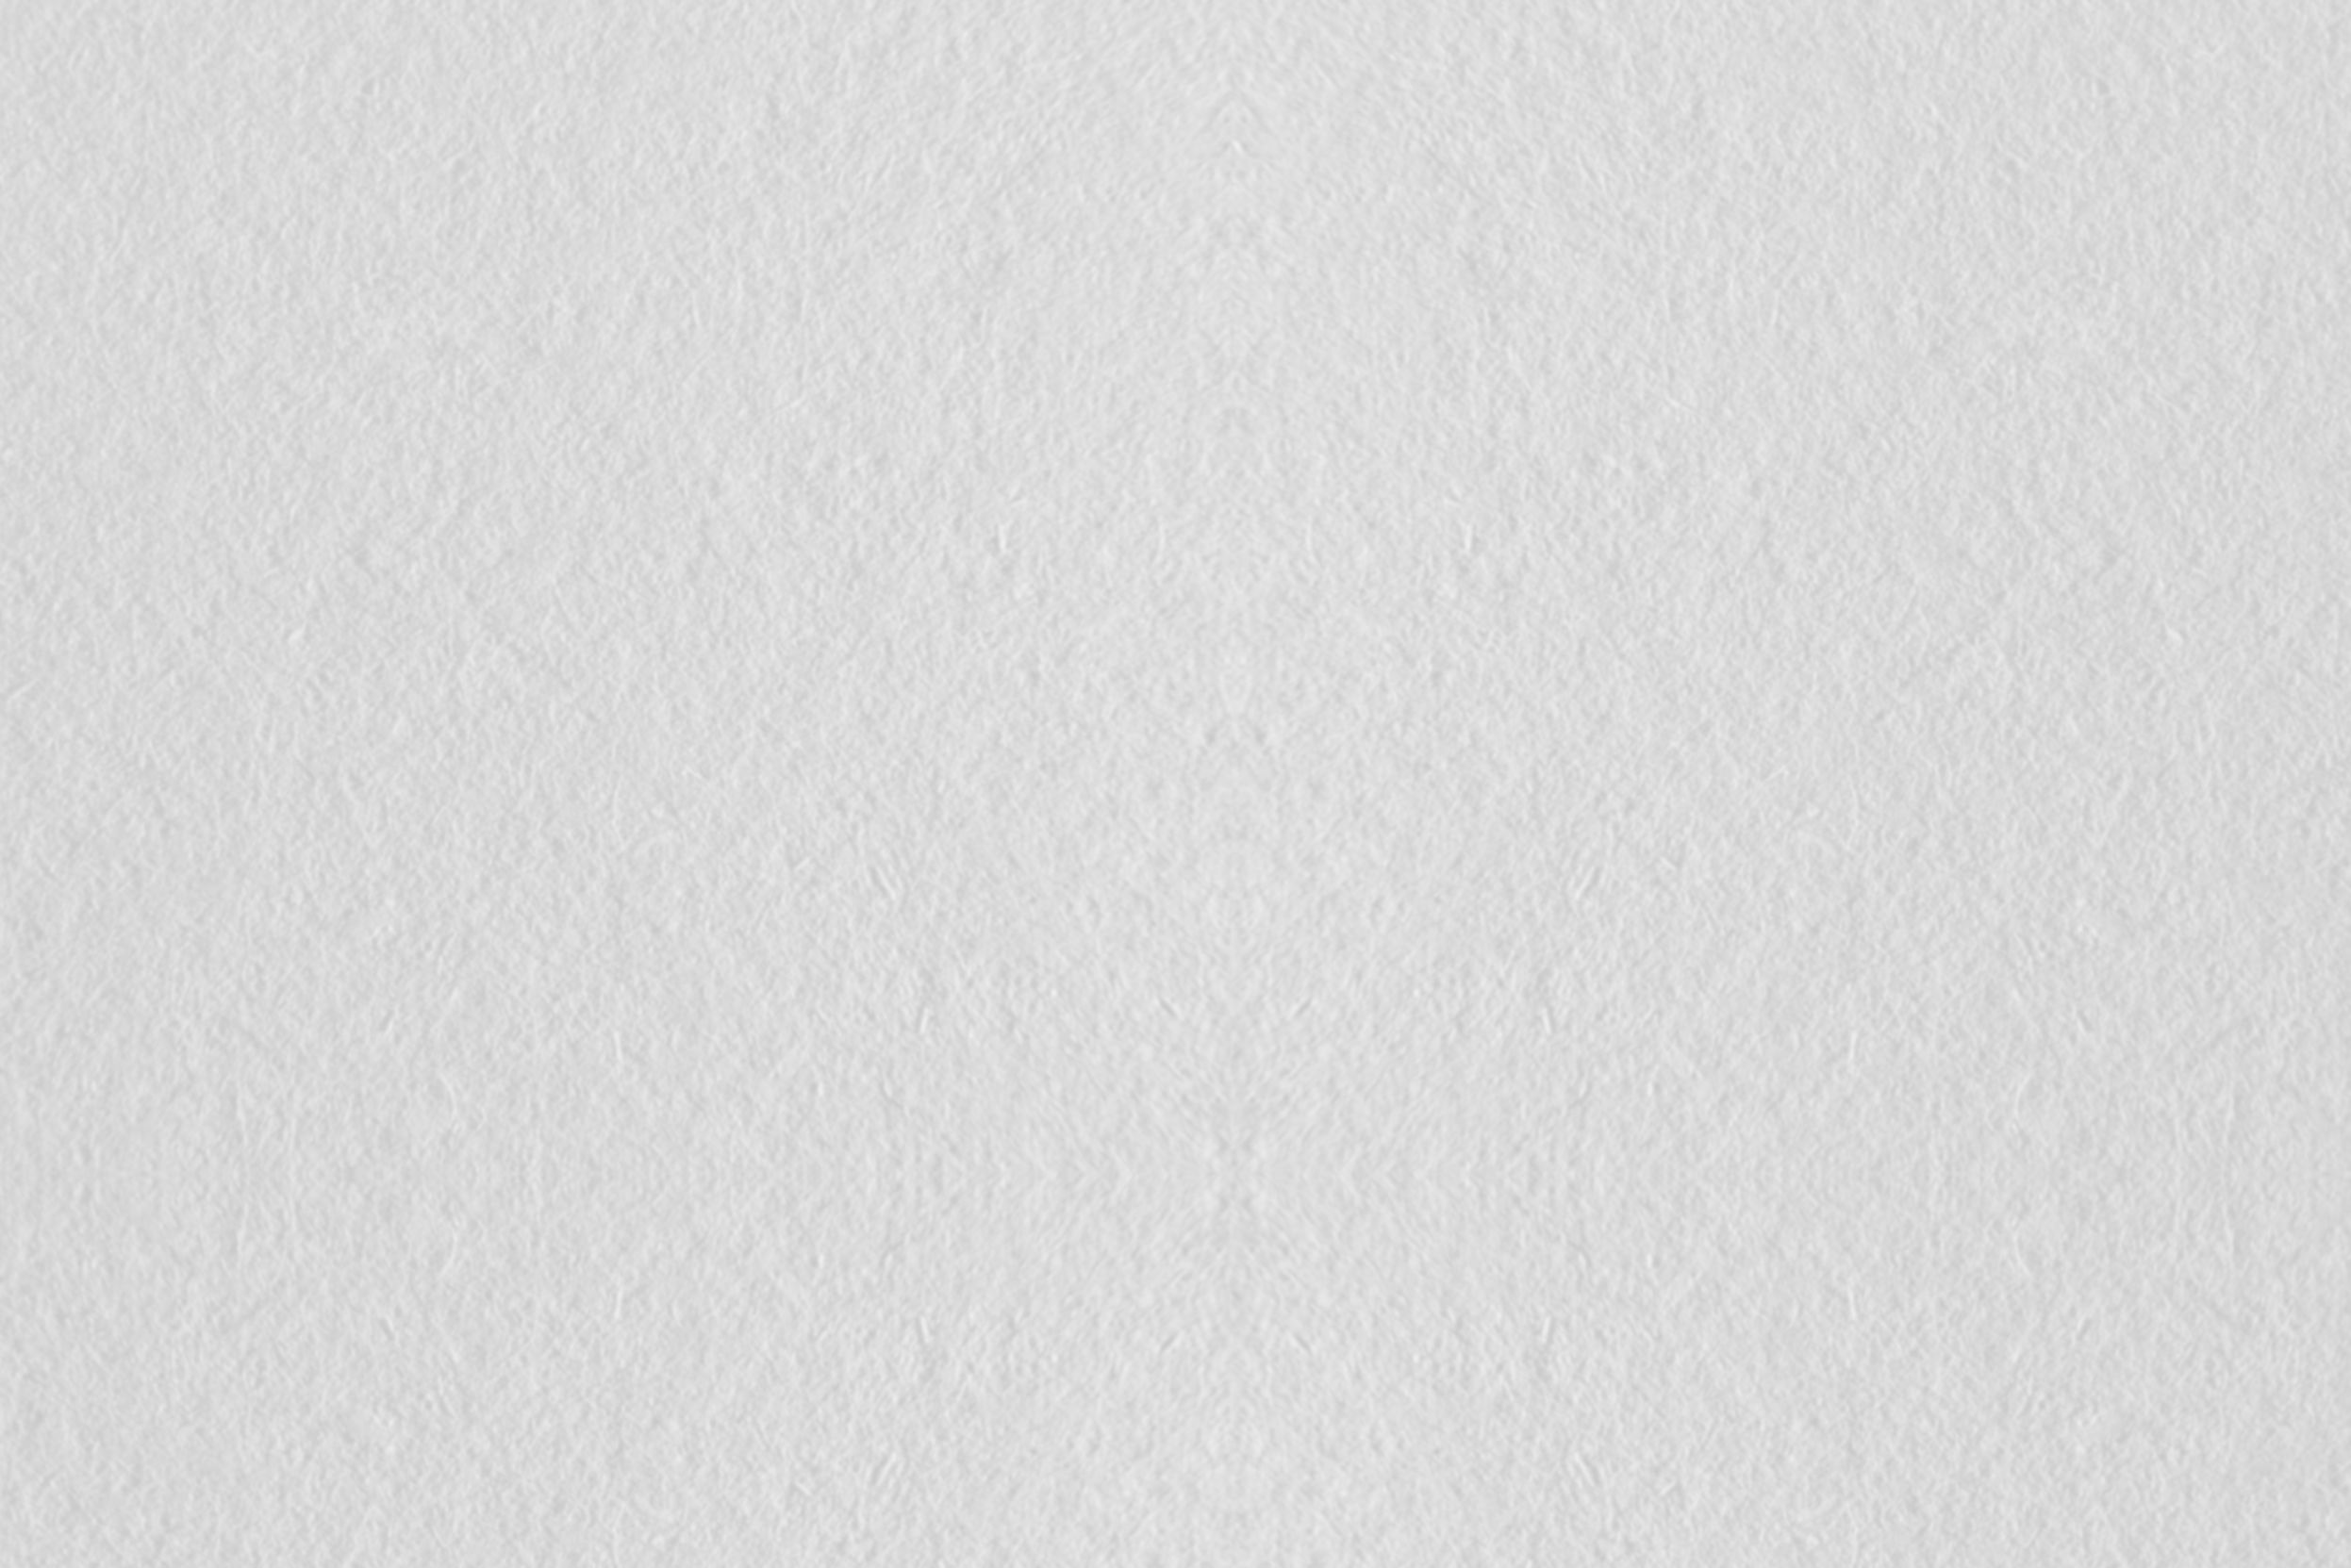 Pochettes (Kraft blanche, bande de protection (strip)): Enveloppes réalisées en papier naturel non couché de couleur blanche (80/100 gr).